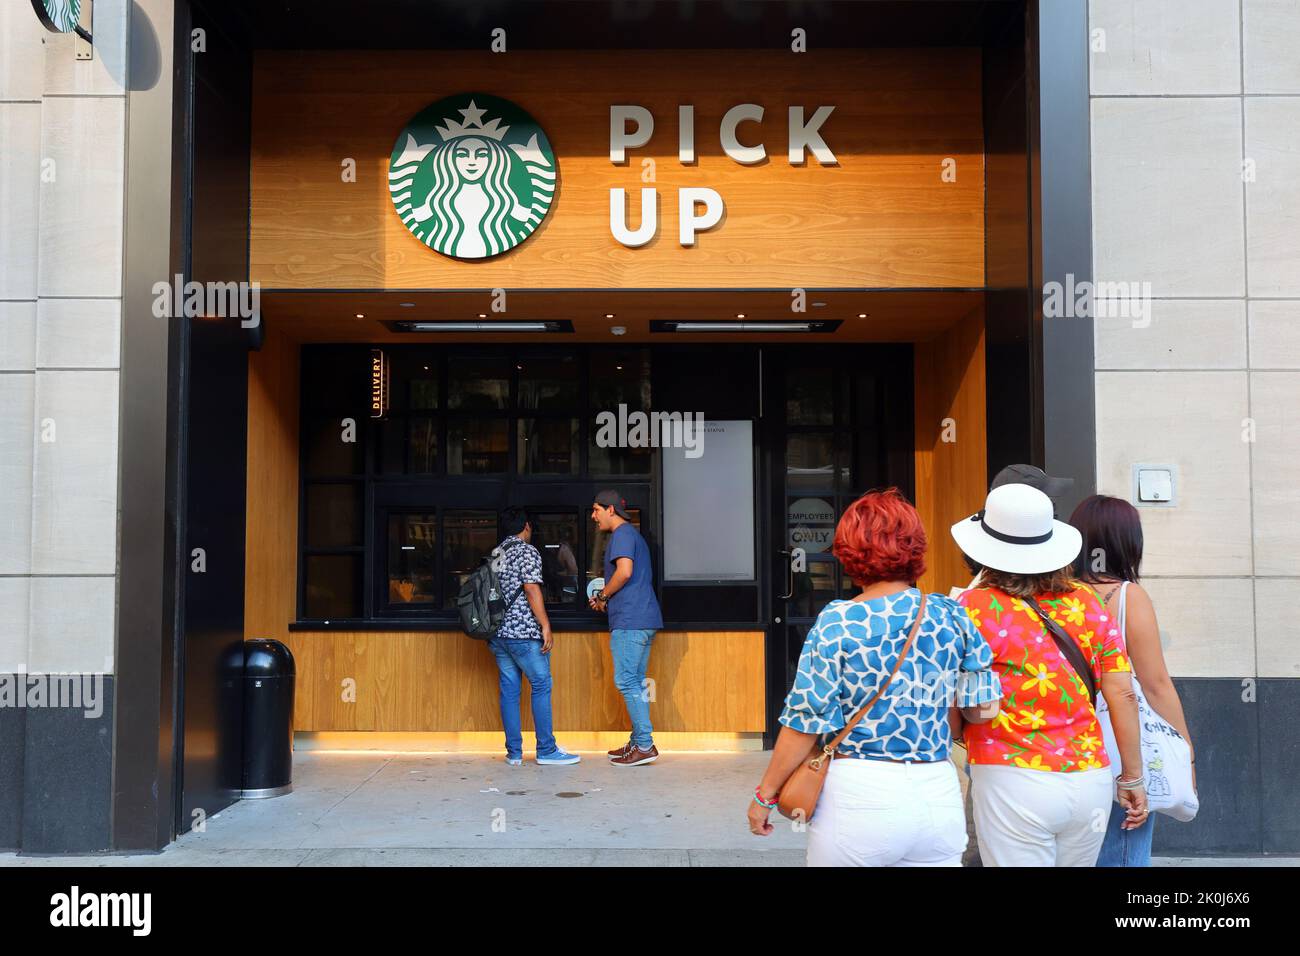 Starbucks Pick Up, 485 5th Ave, New York, foto del negozio di New York della posizione del bar ottimizzata per gli ordini mobili in movimento. Foto Stock